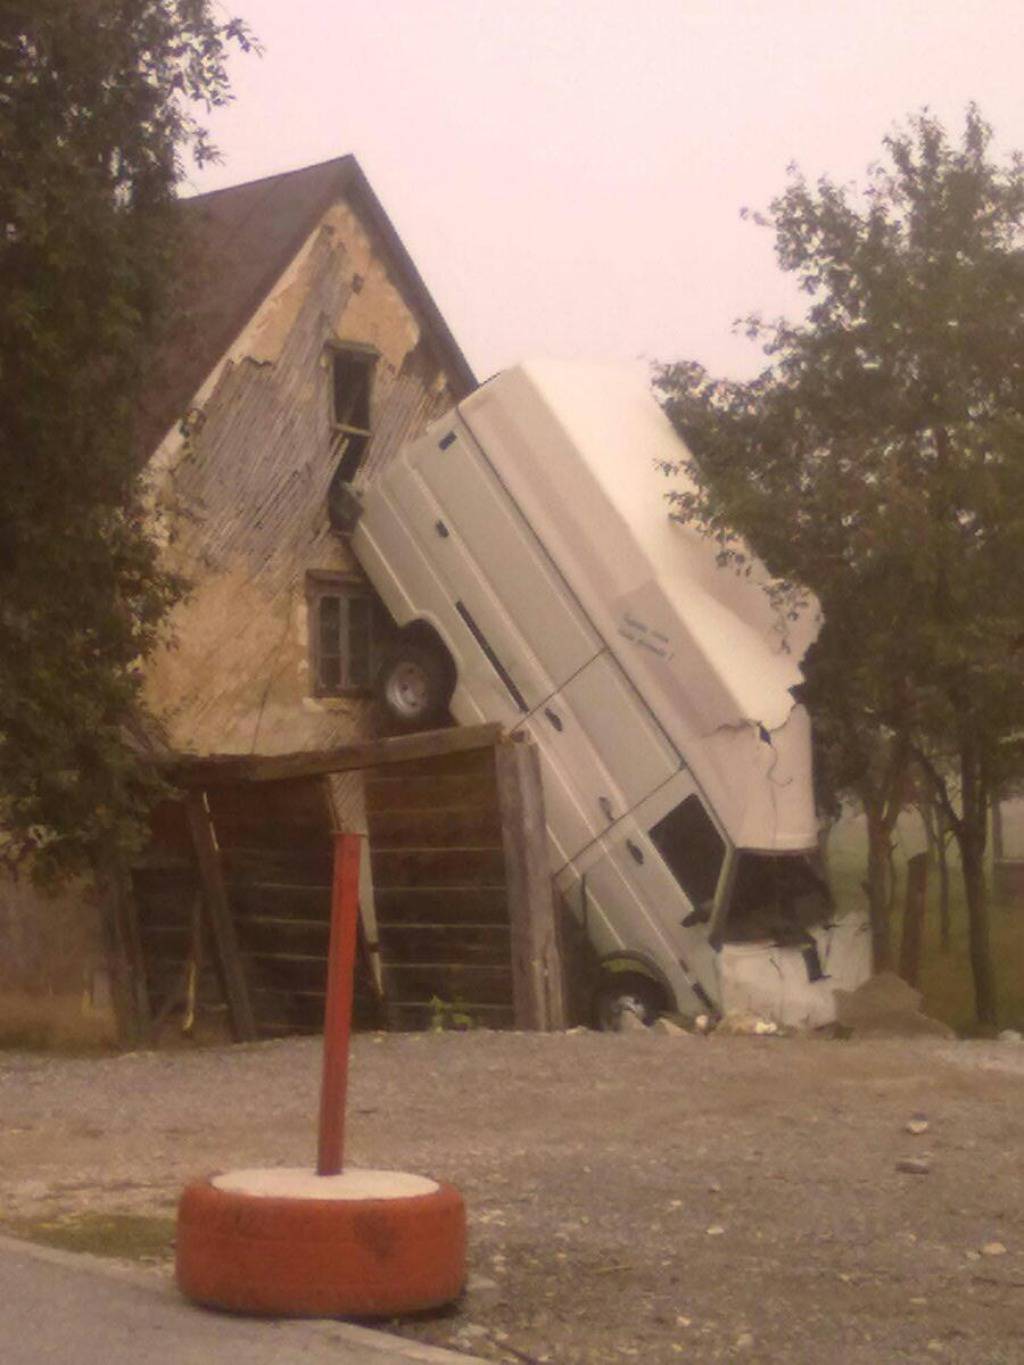 Vozač se kamionom 'priljubio' za zid kuće, pa je odšetao...